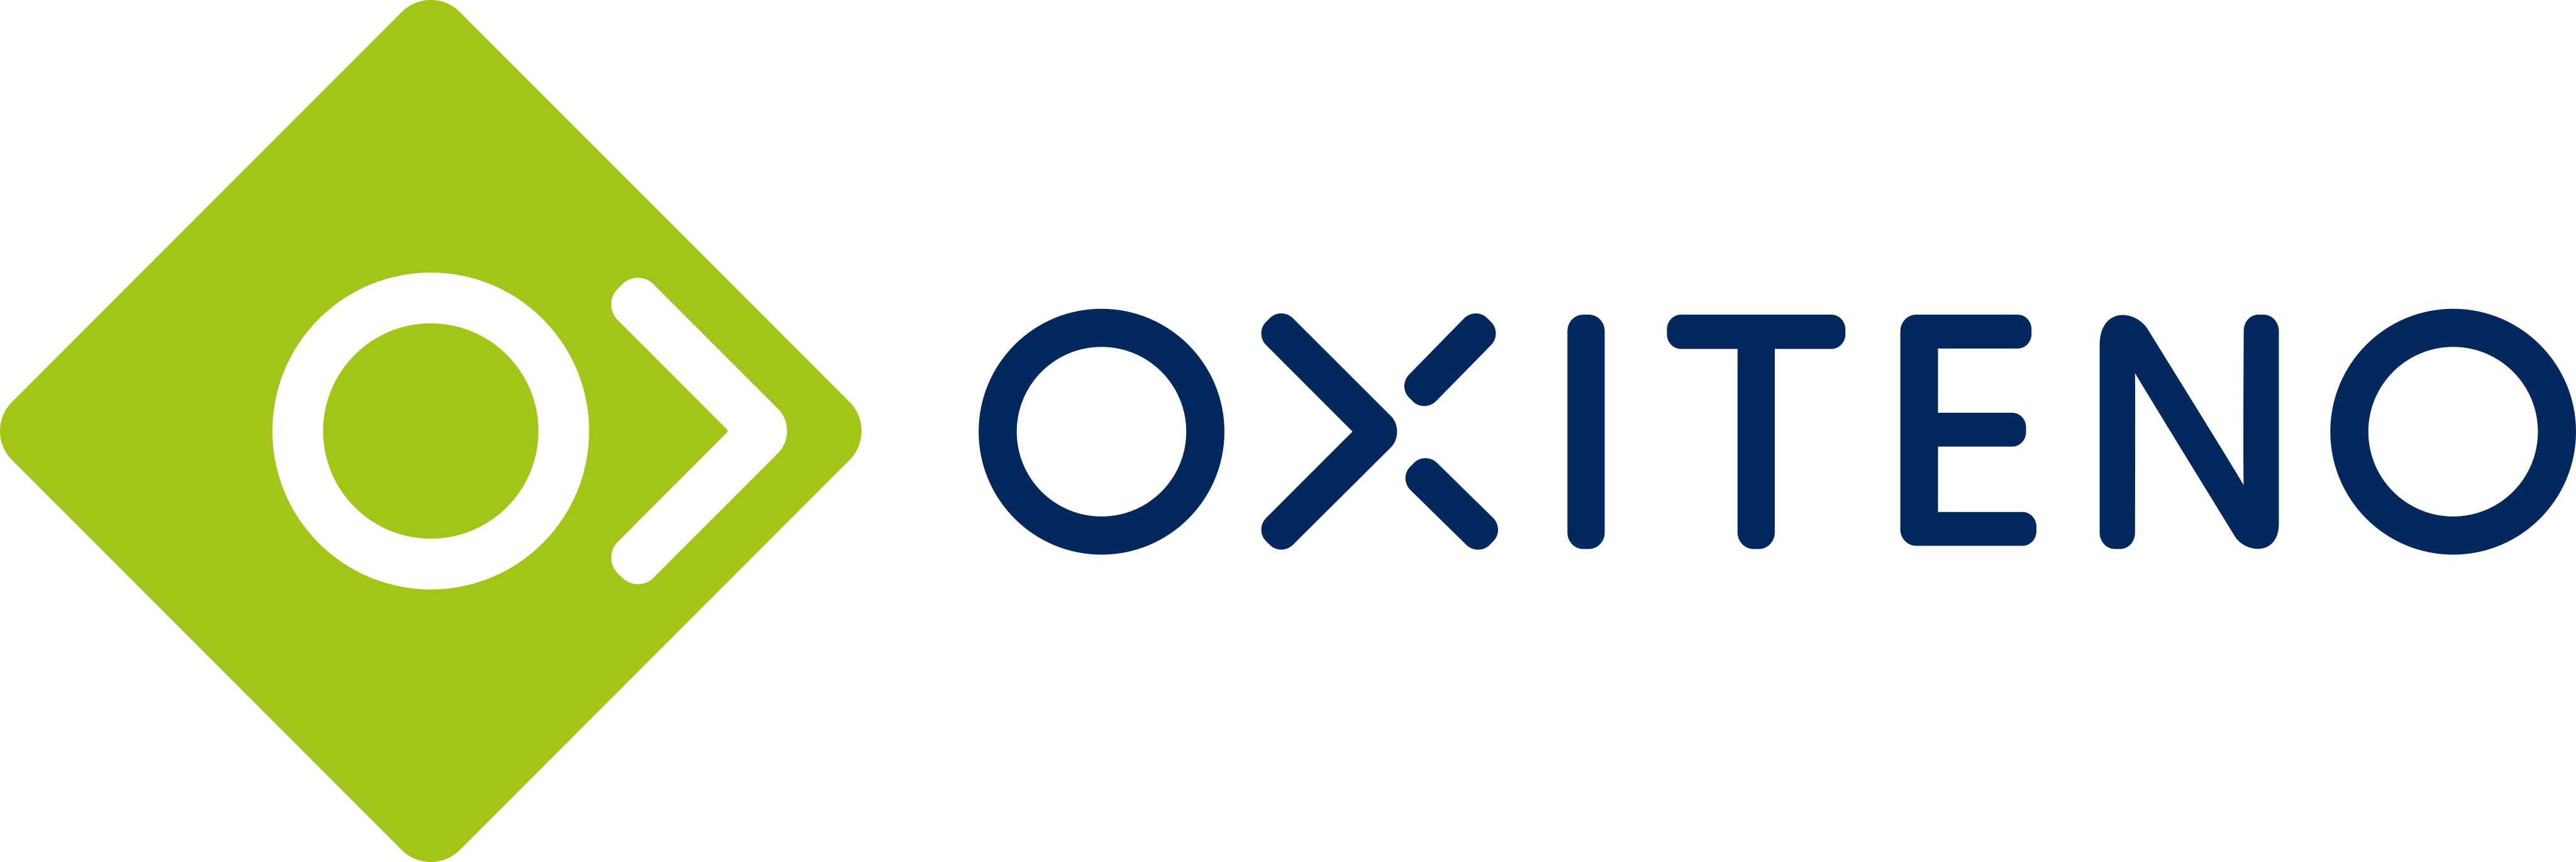 Oxiteno Logo.